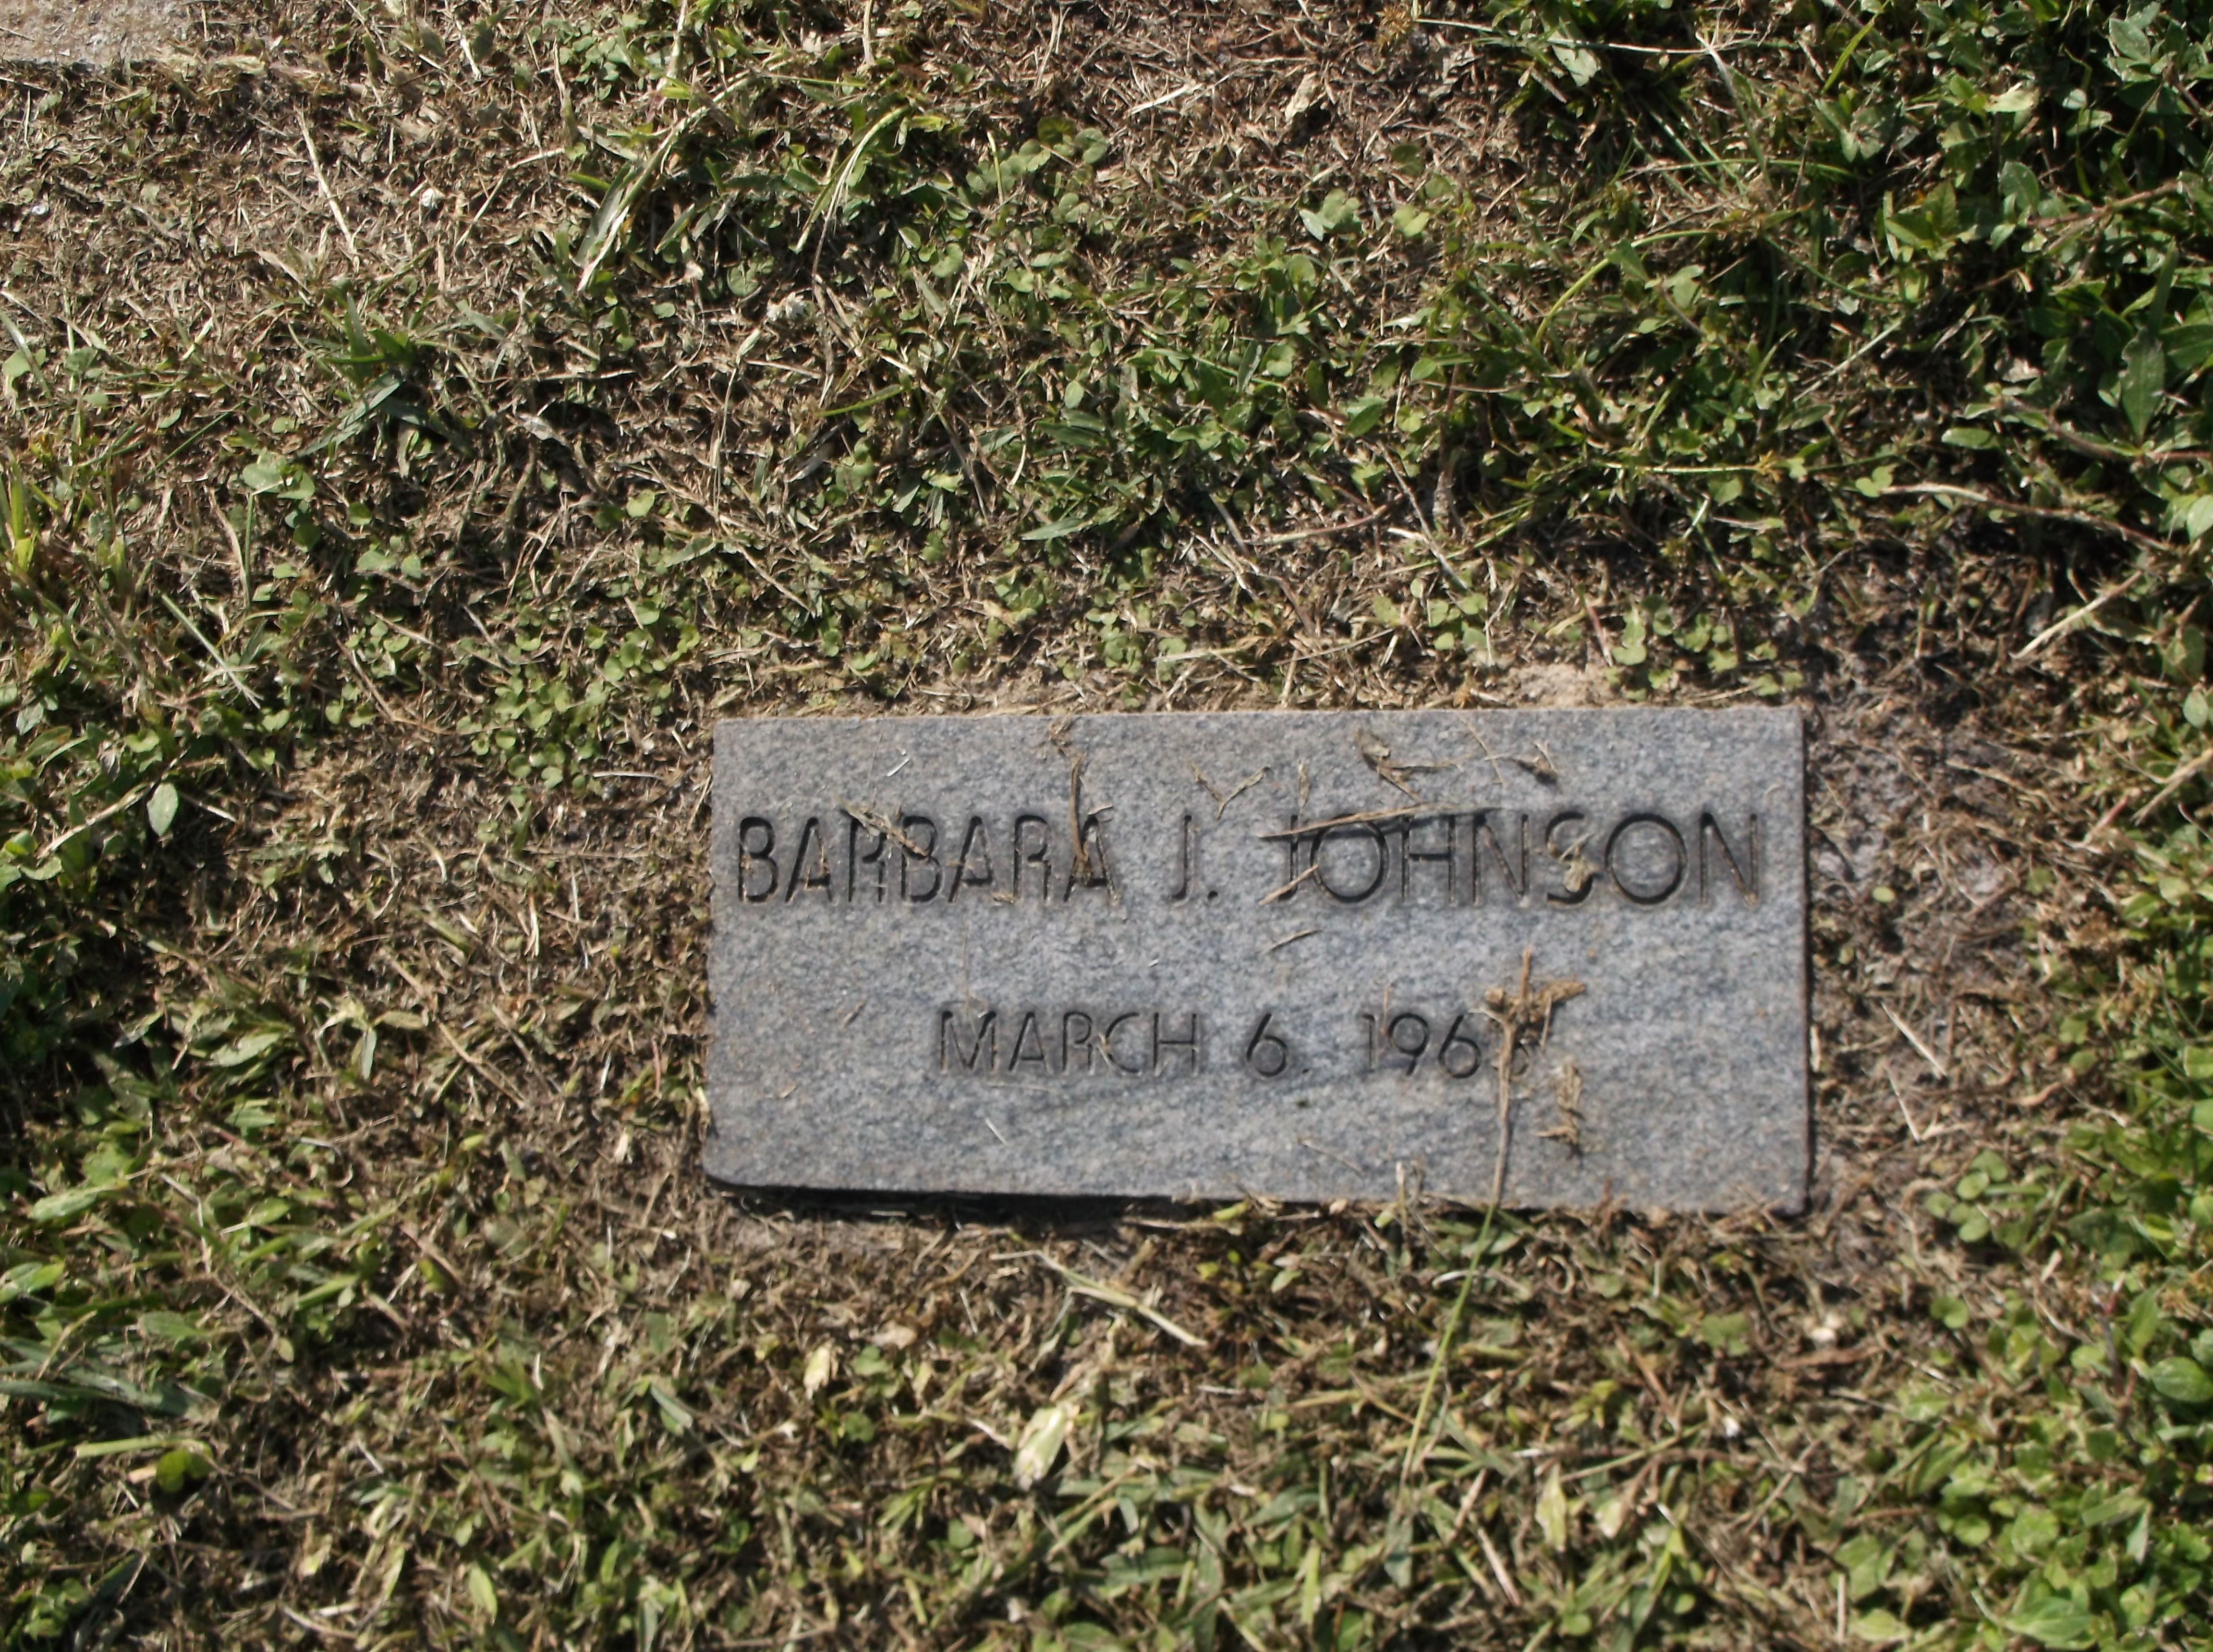 Barbara J Johnson